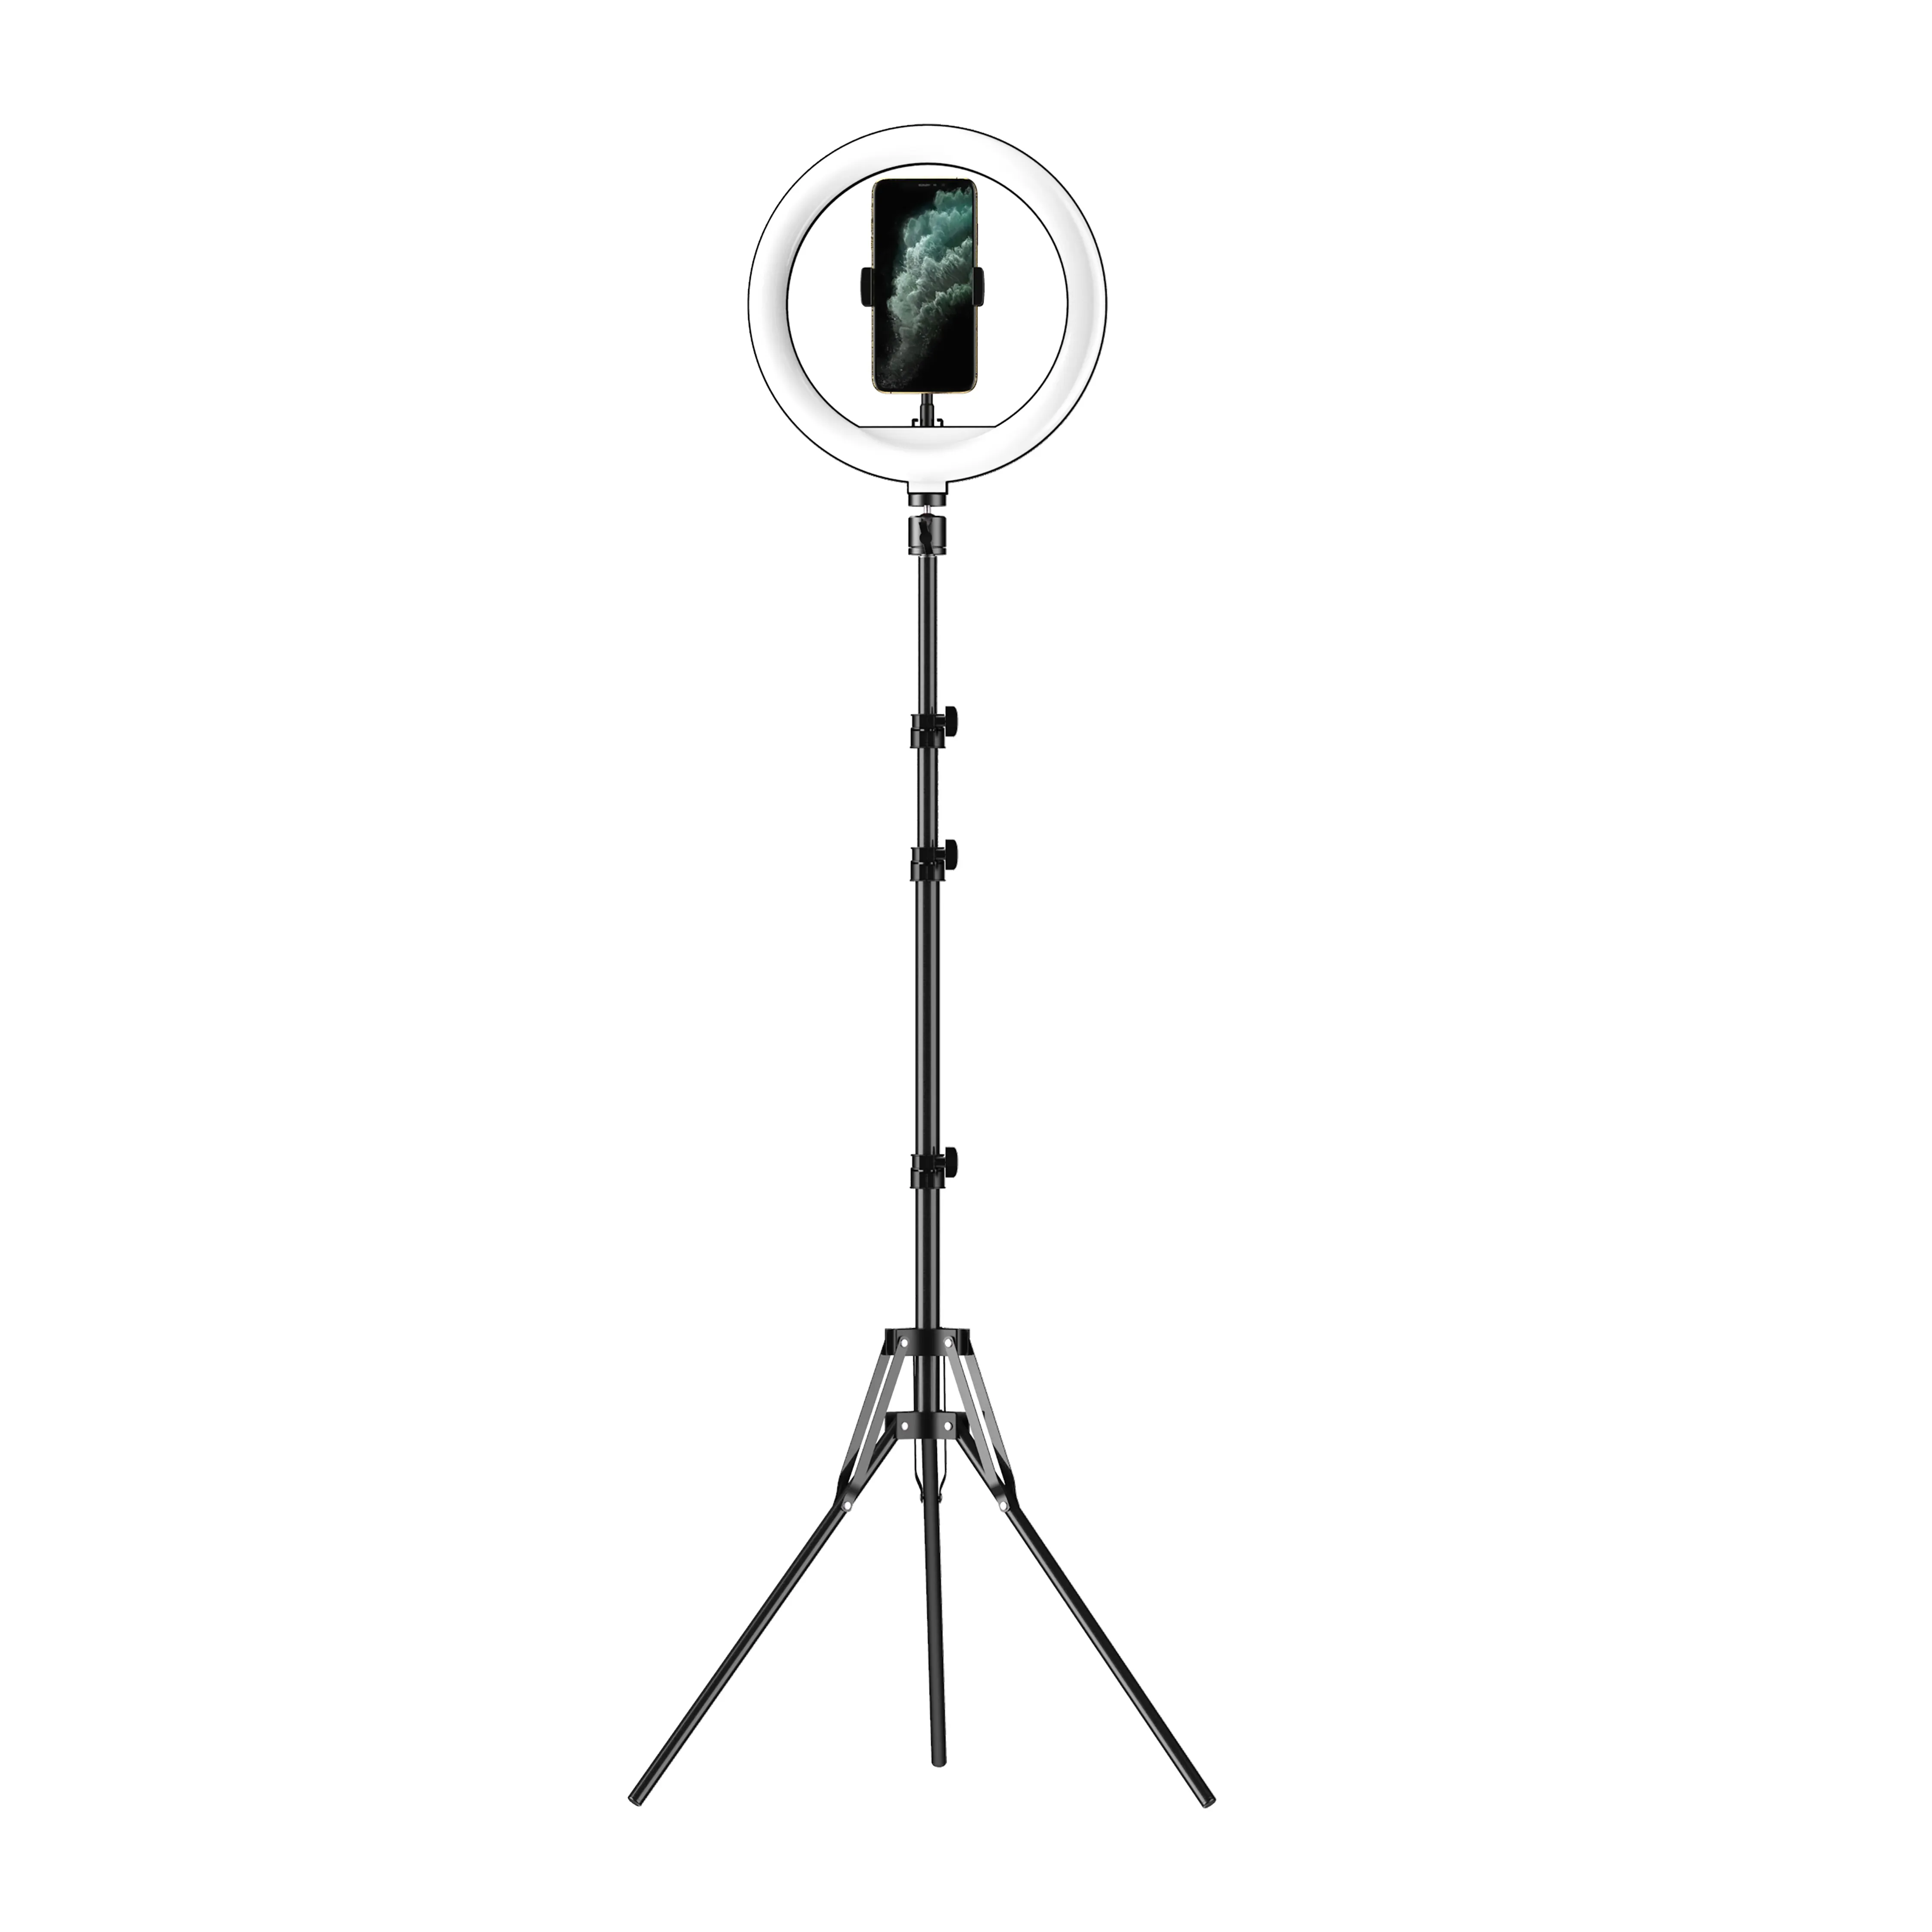 Großhandel 10-Zoll-LED-Ringlicht-Kit Füll licht Selfie-Rin glicht mit Bodens tativ ständer und Telefon halter